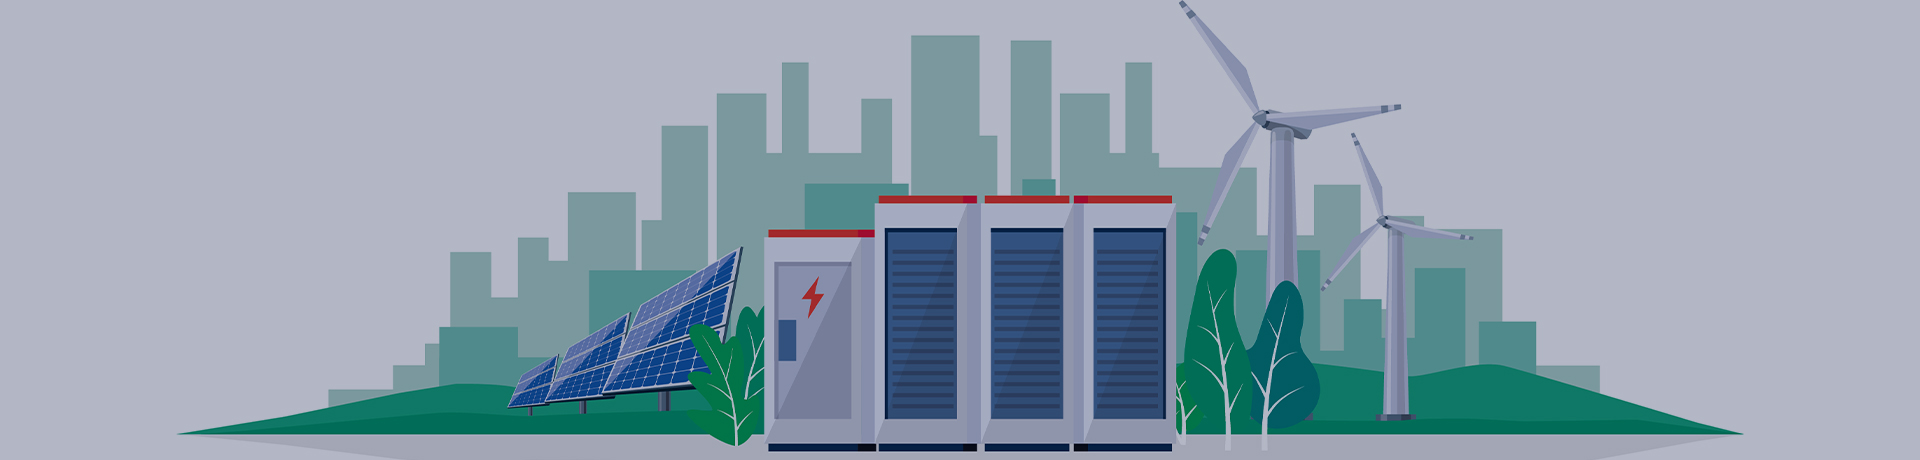 Illustration vectorielle d'une grande station de stockage d'énergie de batterie lithium-ion rechargeable et d'une centrale électrique renouvelable avec panneaux solaires et éoliennes. Système de stockage de l'énergie de sauvegarde. ©petovarga shutterstock 1670095636